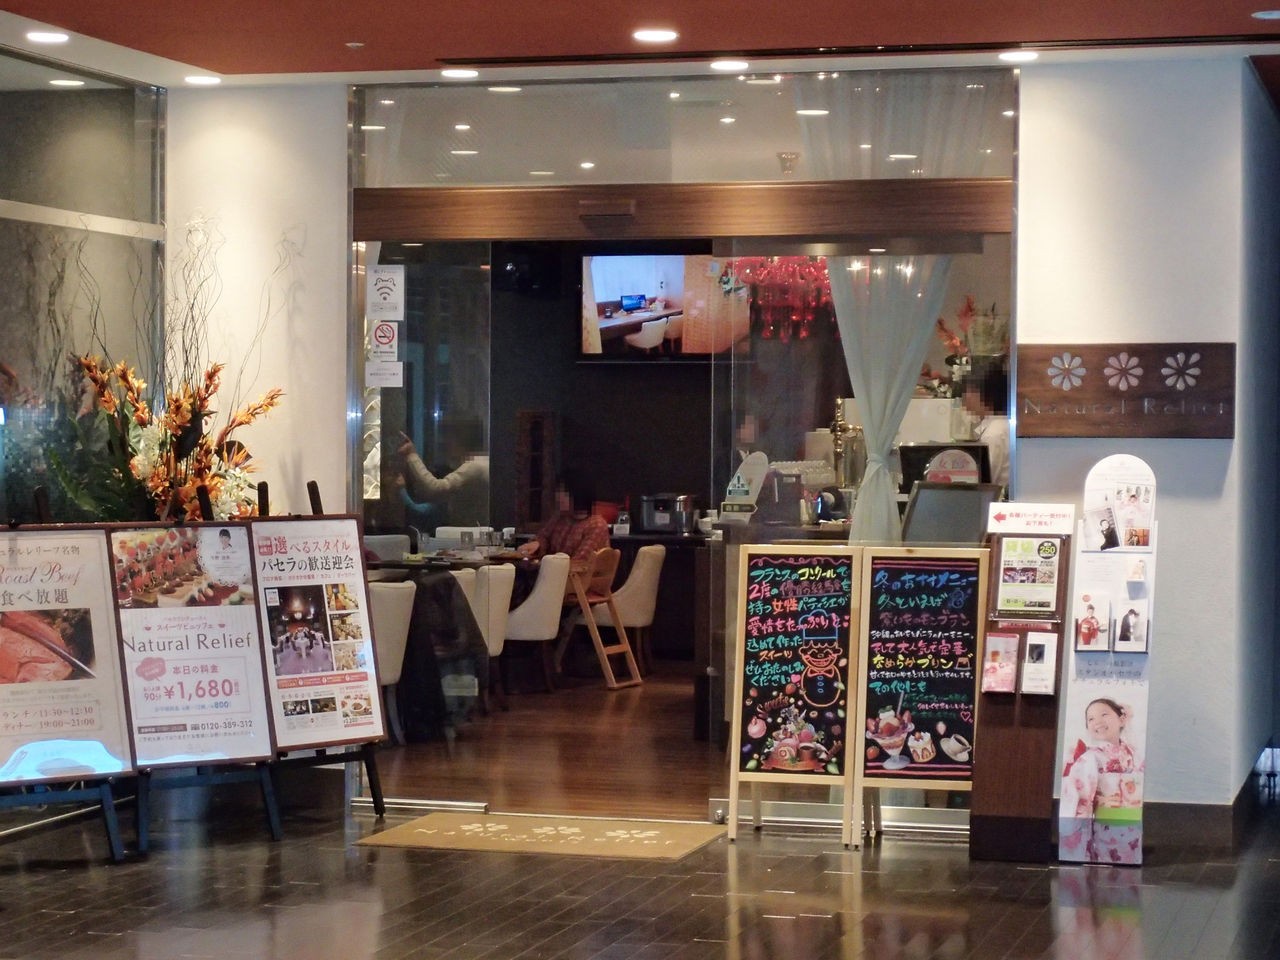 【横浜駅】スイーツバイキングなら是非ここで♡デザート食べ放題の人気店特集